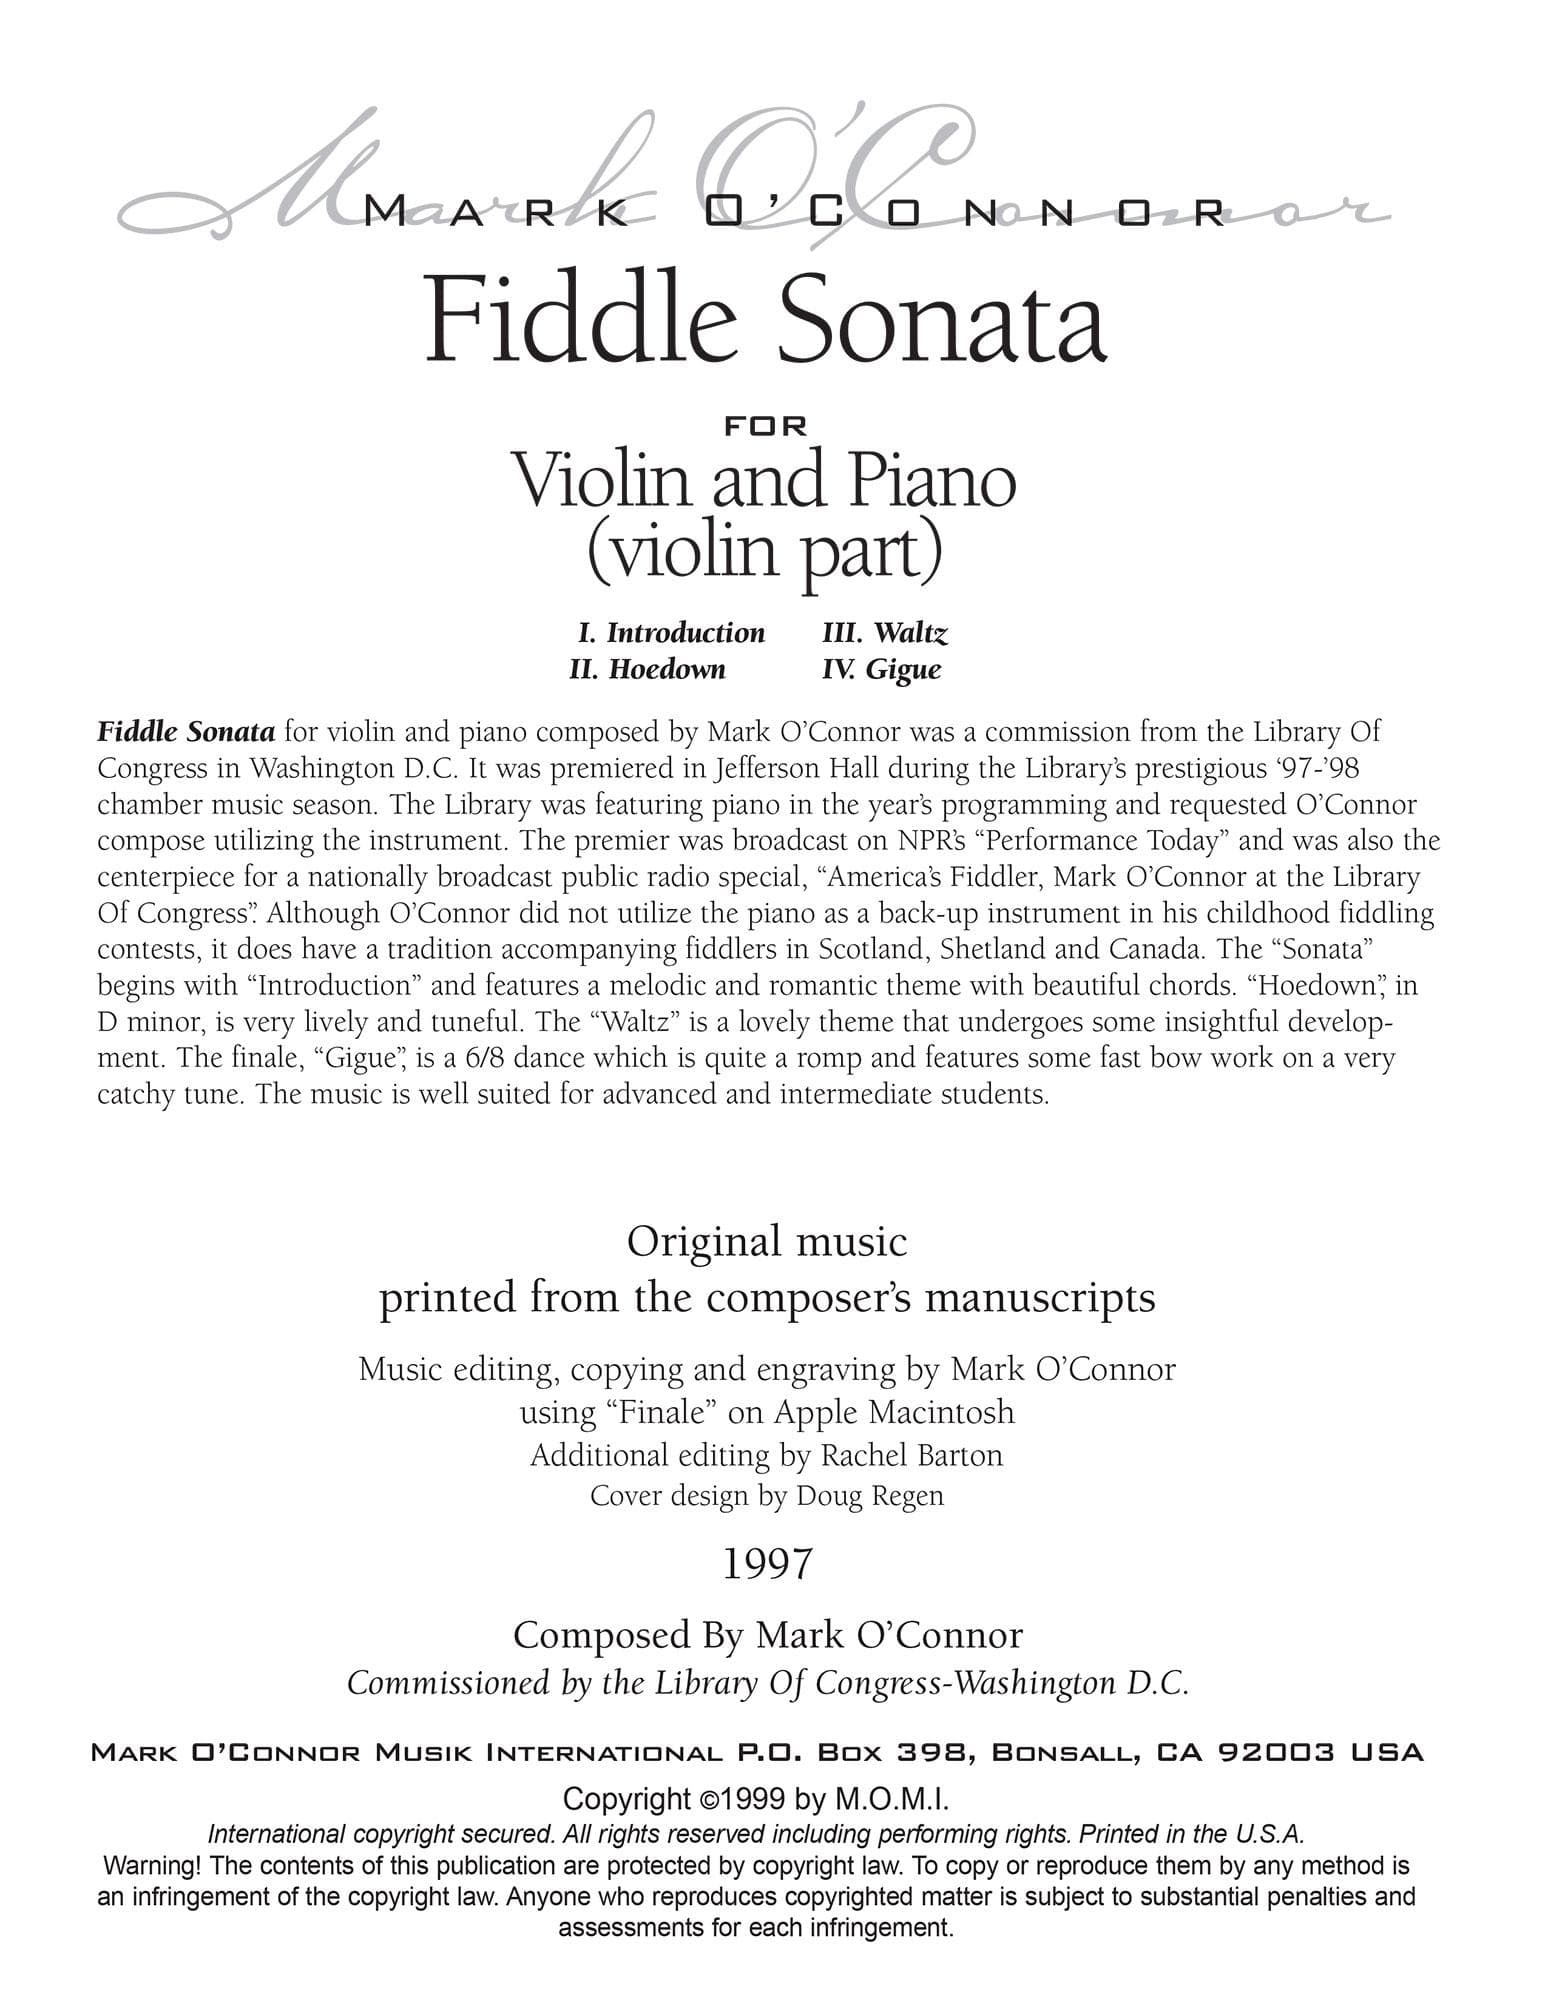 O'Connor, Mark - Fiddle Sonata for Violin and Piano - Violin - Digital Download